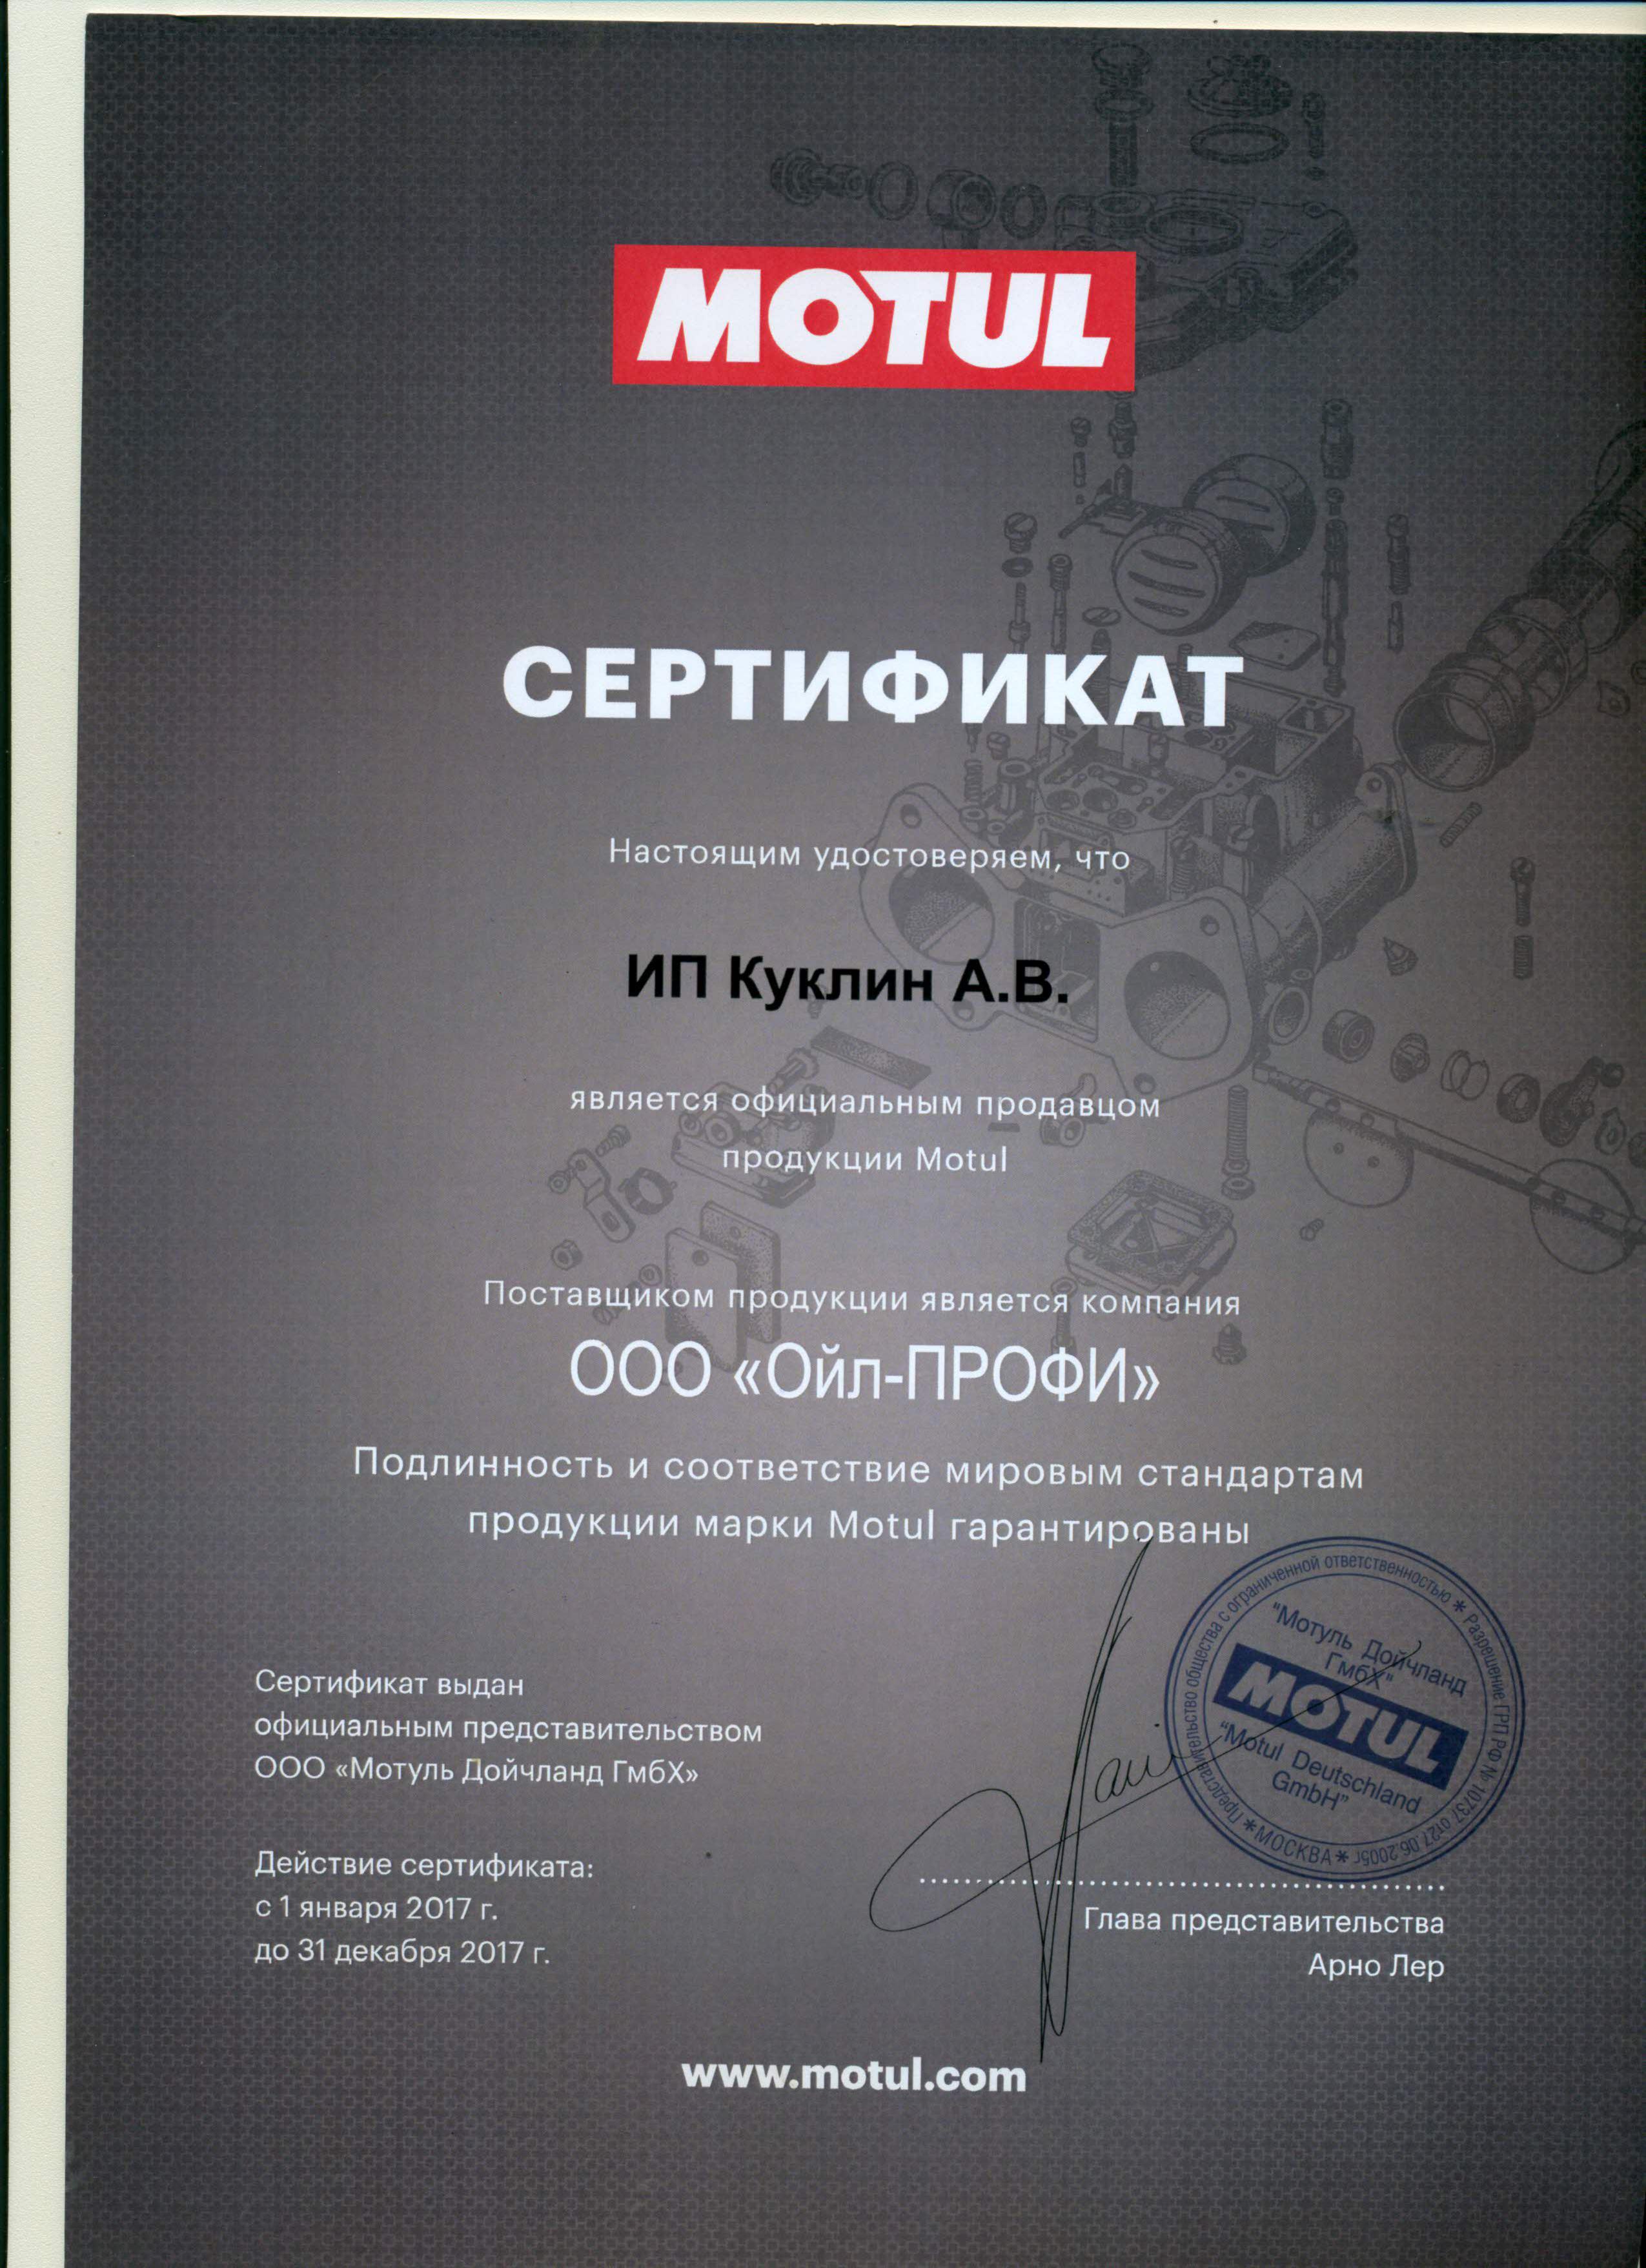 Сертификат MOTUL